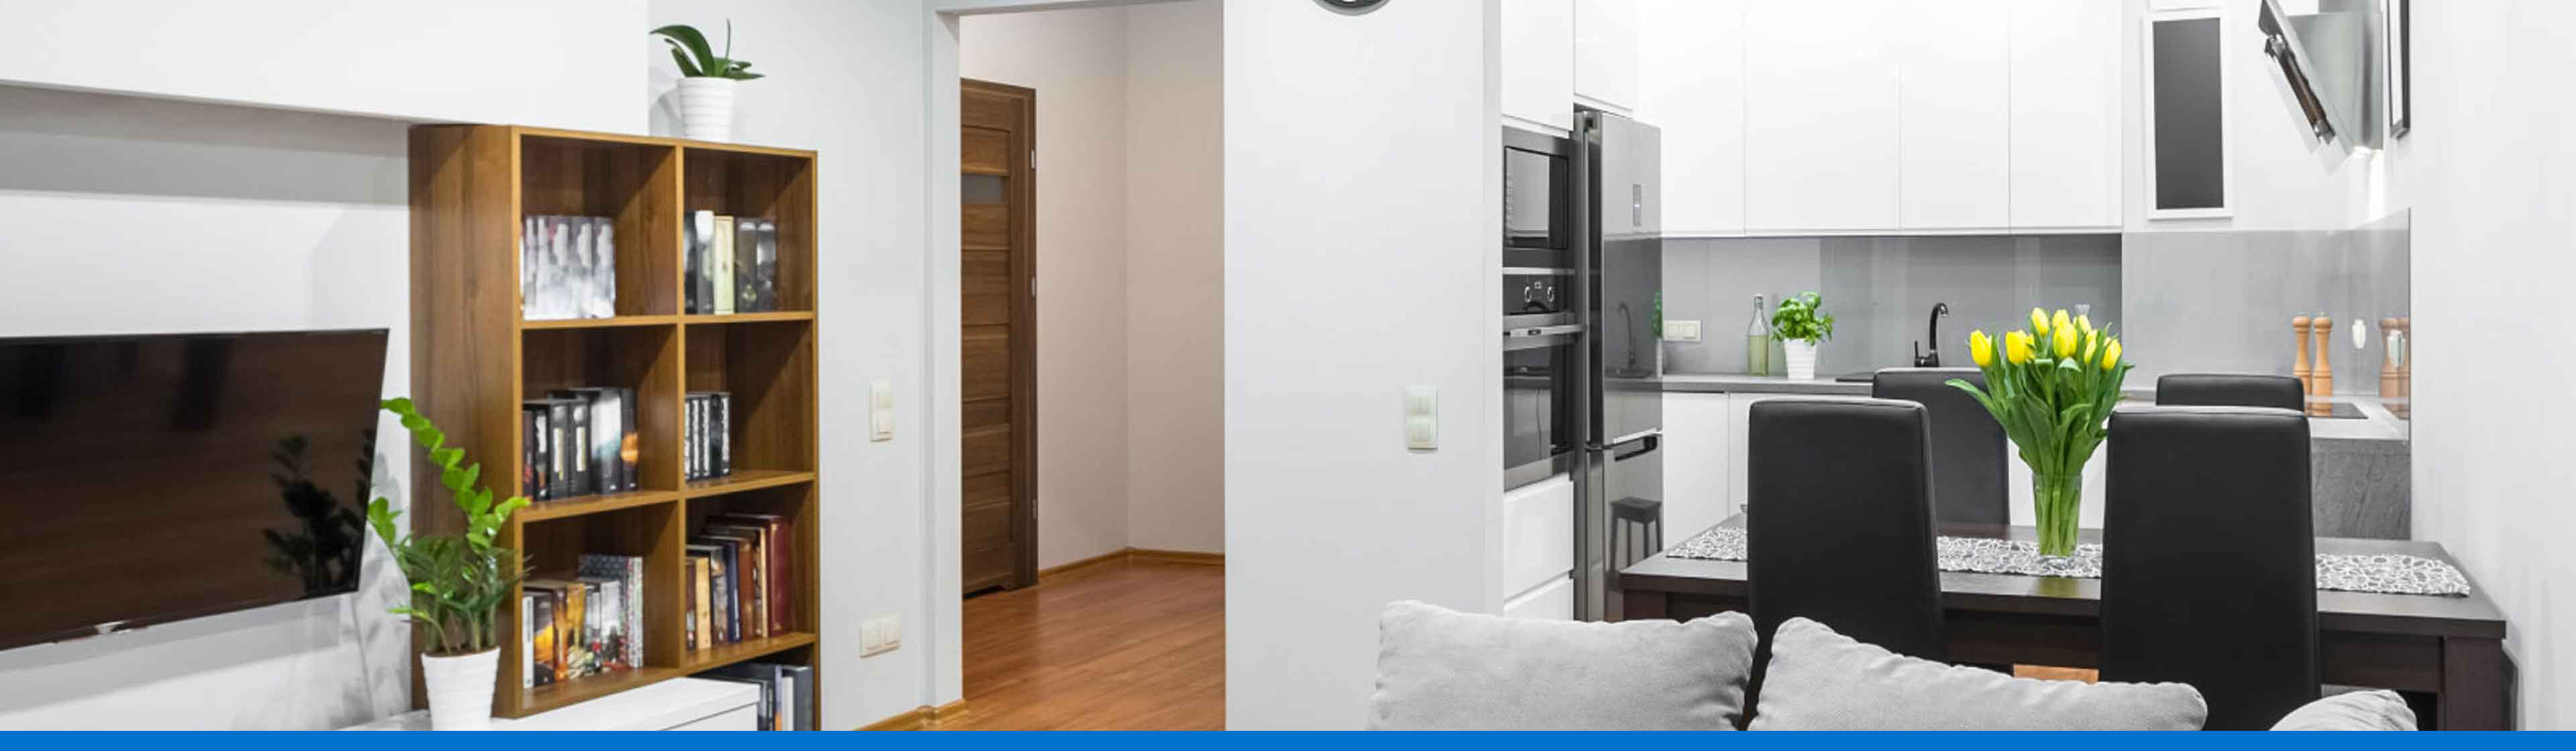 ¿Cómo decorar un apartamento pequeño moderno con estilo vanguardista?